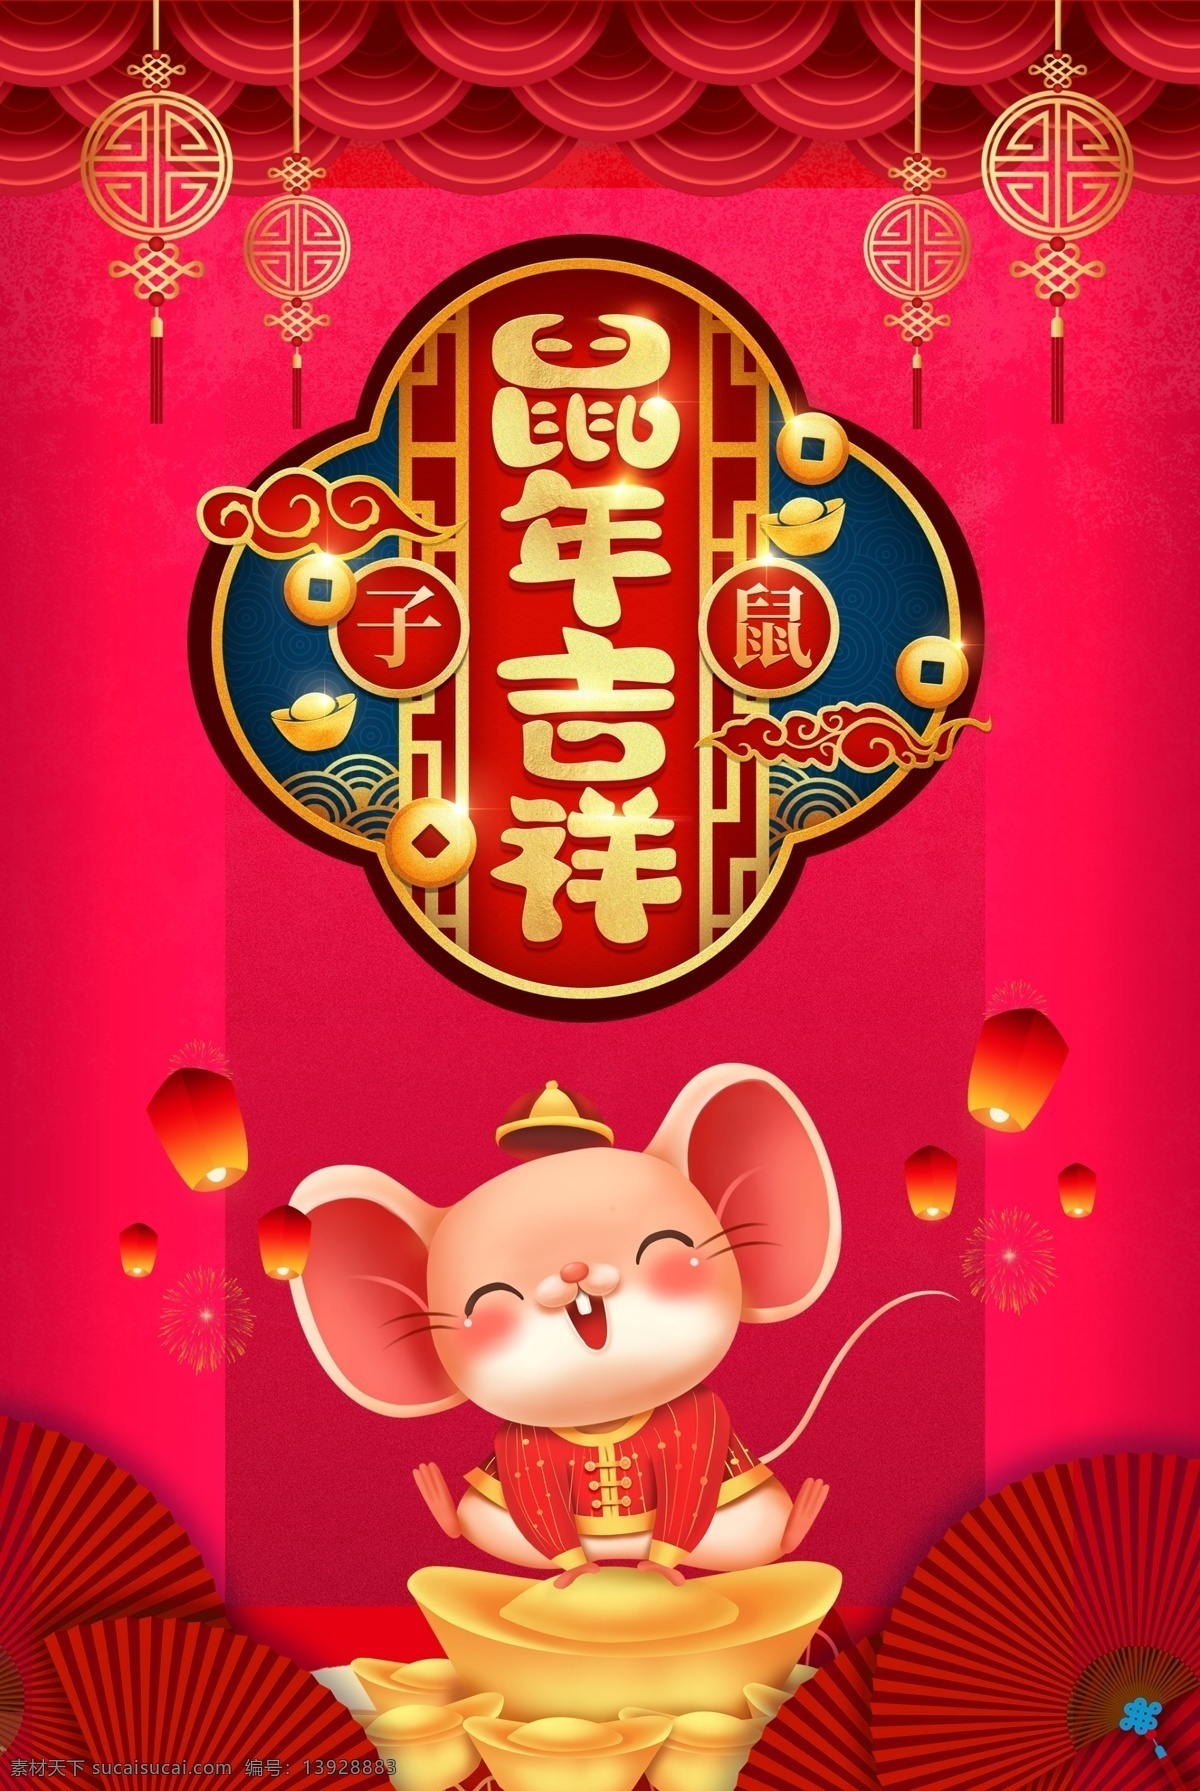 鼠年吉祥海报 2020 春节海报 促销海报 贺新年 活动背景 喜庆 鼠年行大运 节日素材 卡通鼠 喜庆背景 红色背景